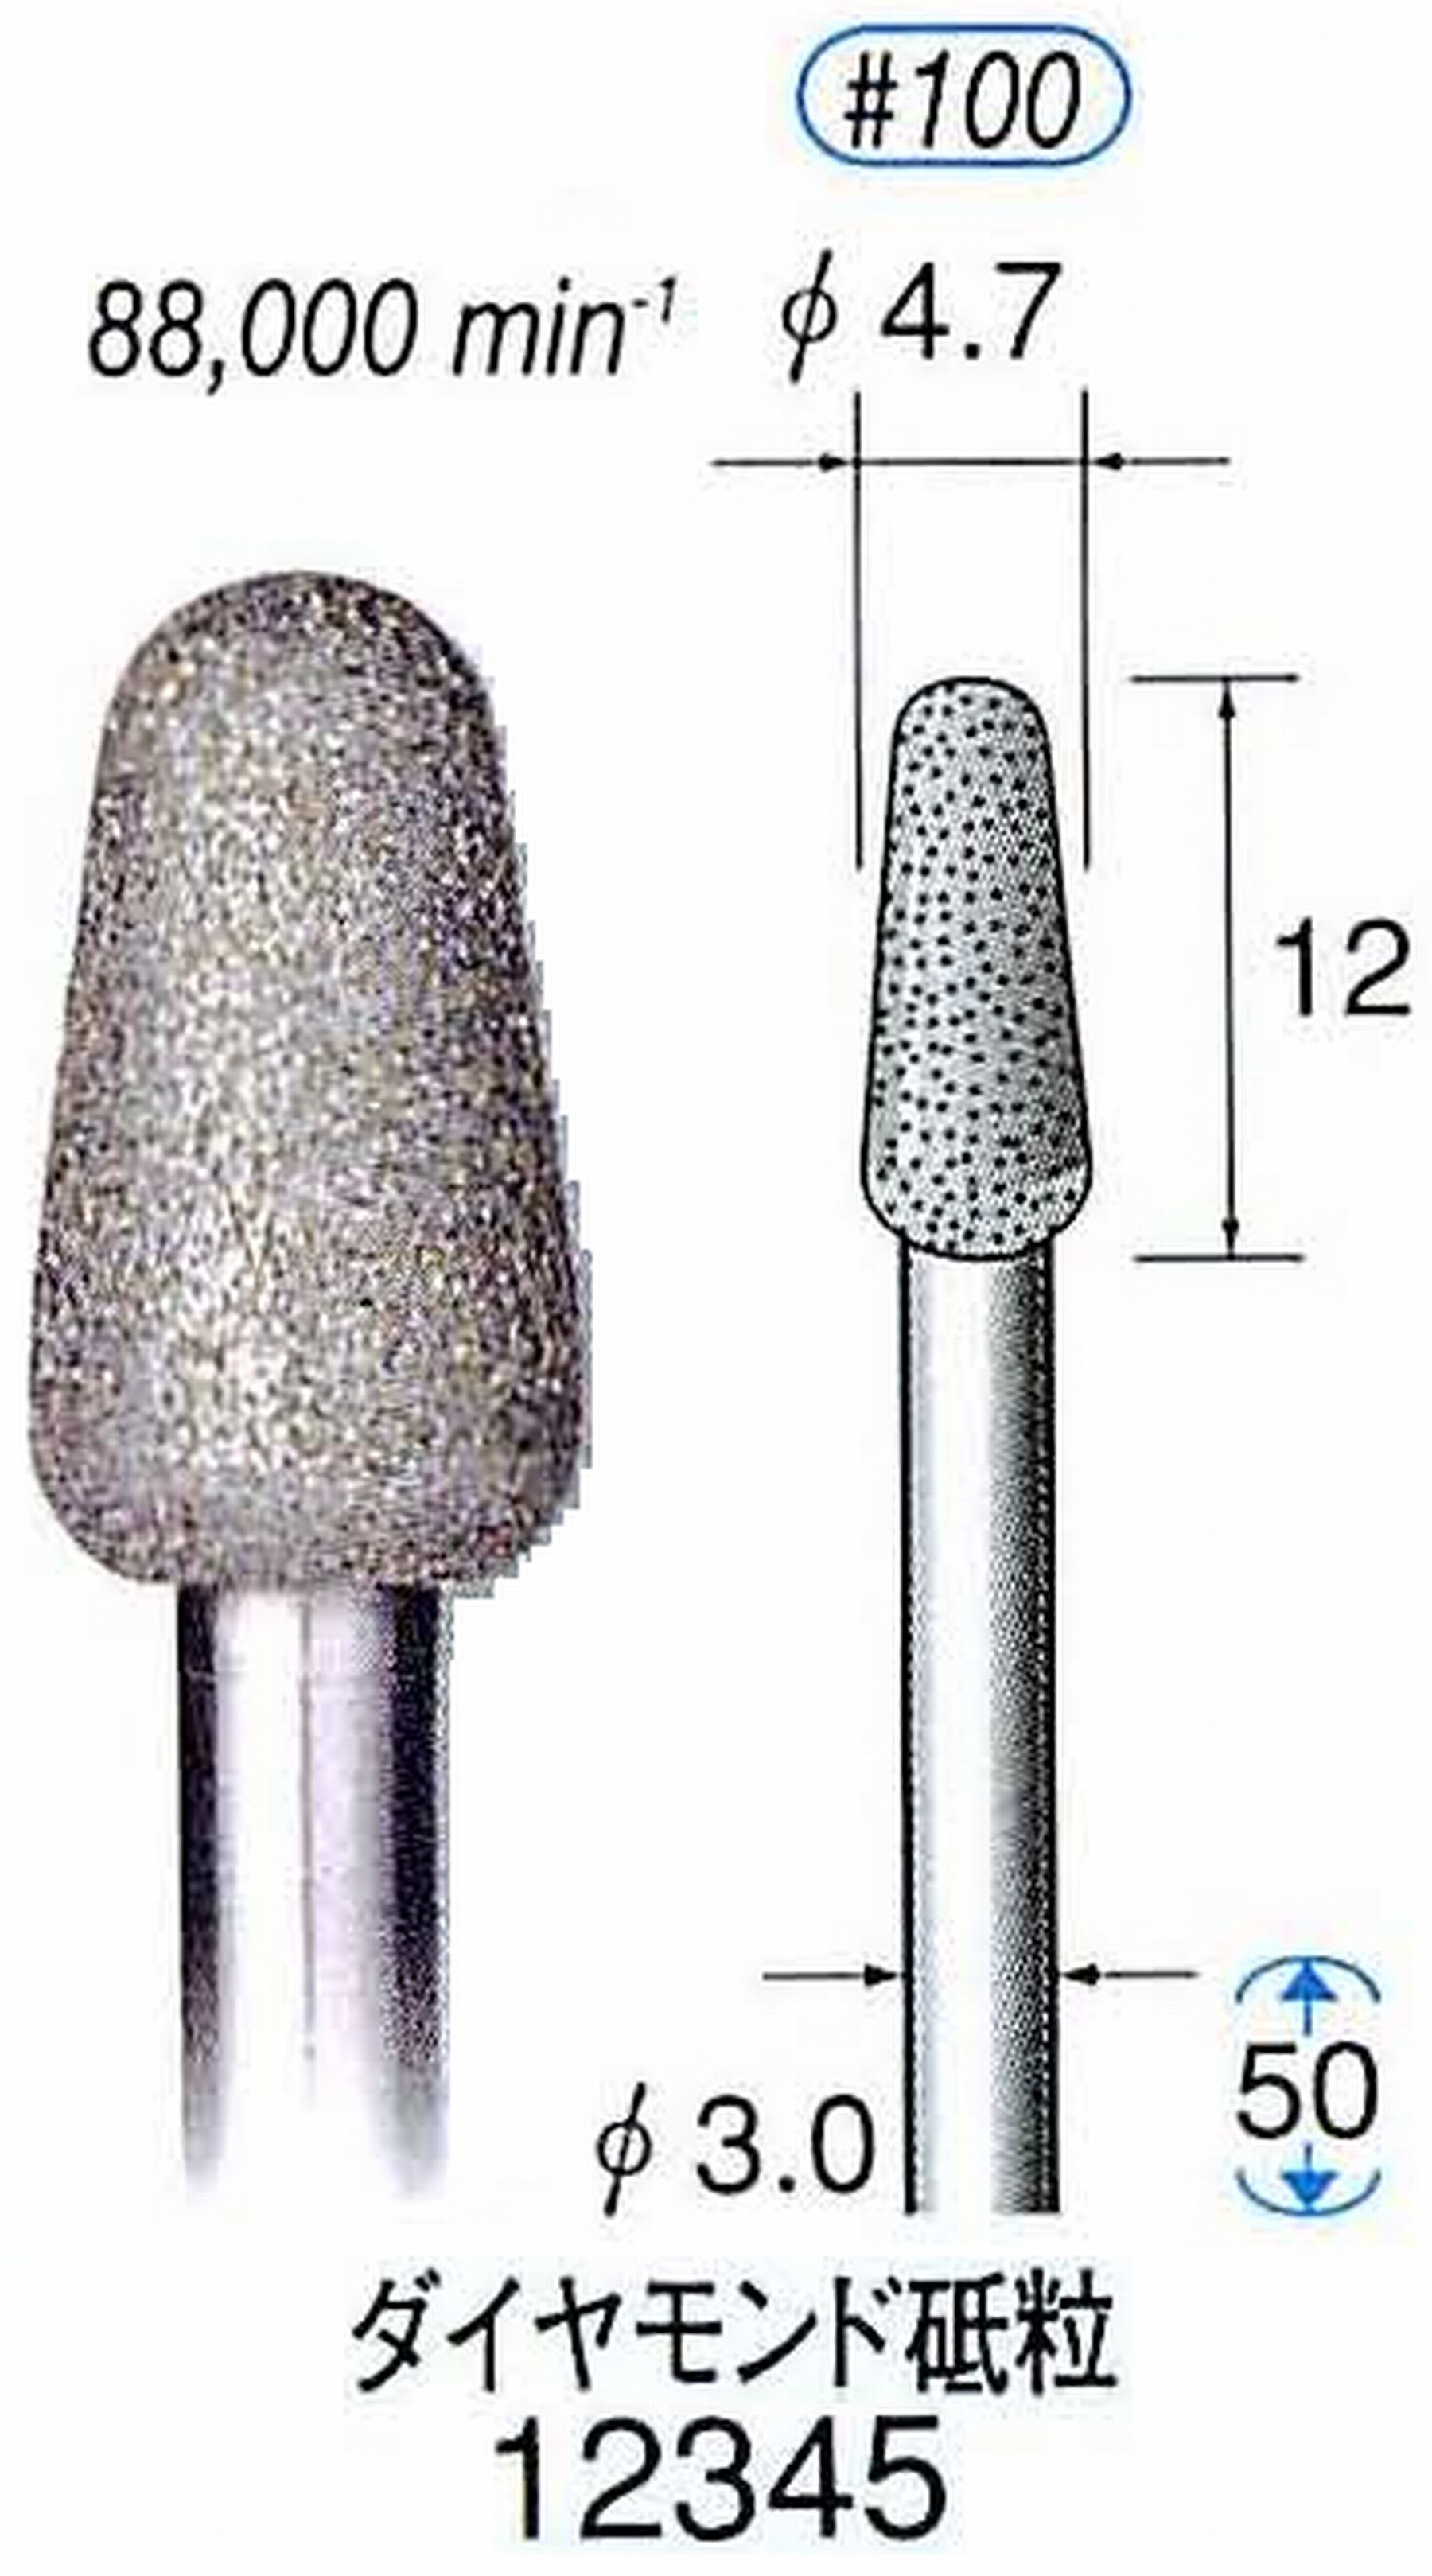 ナカニシ/NAKANISHI 電着ダイヤモンド ダイヤモンド砥粒 軸径(シャンク)φ3.0mm 12345